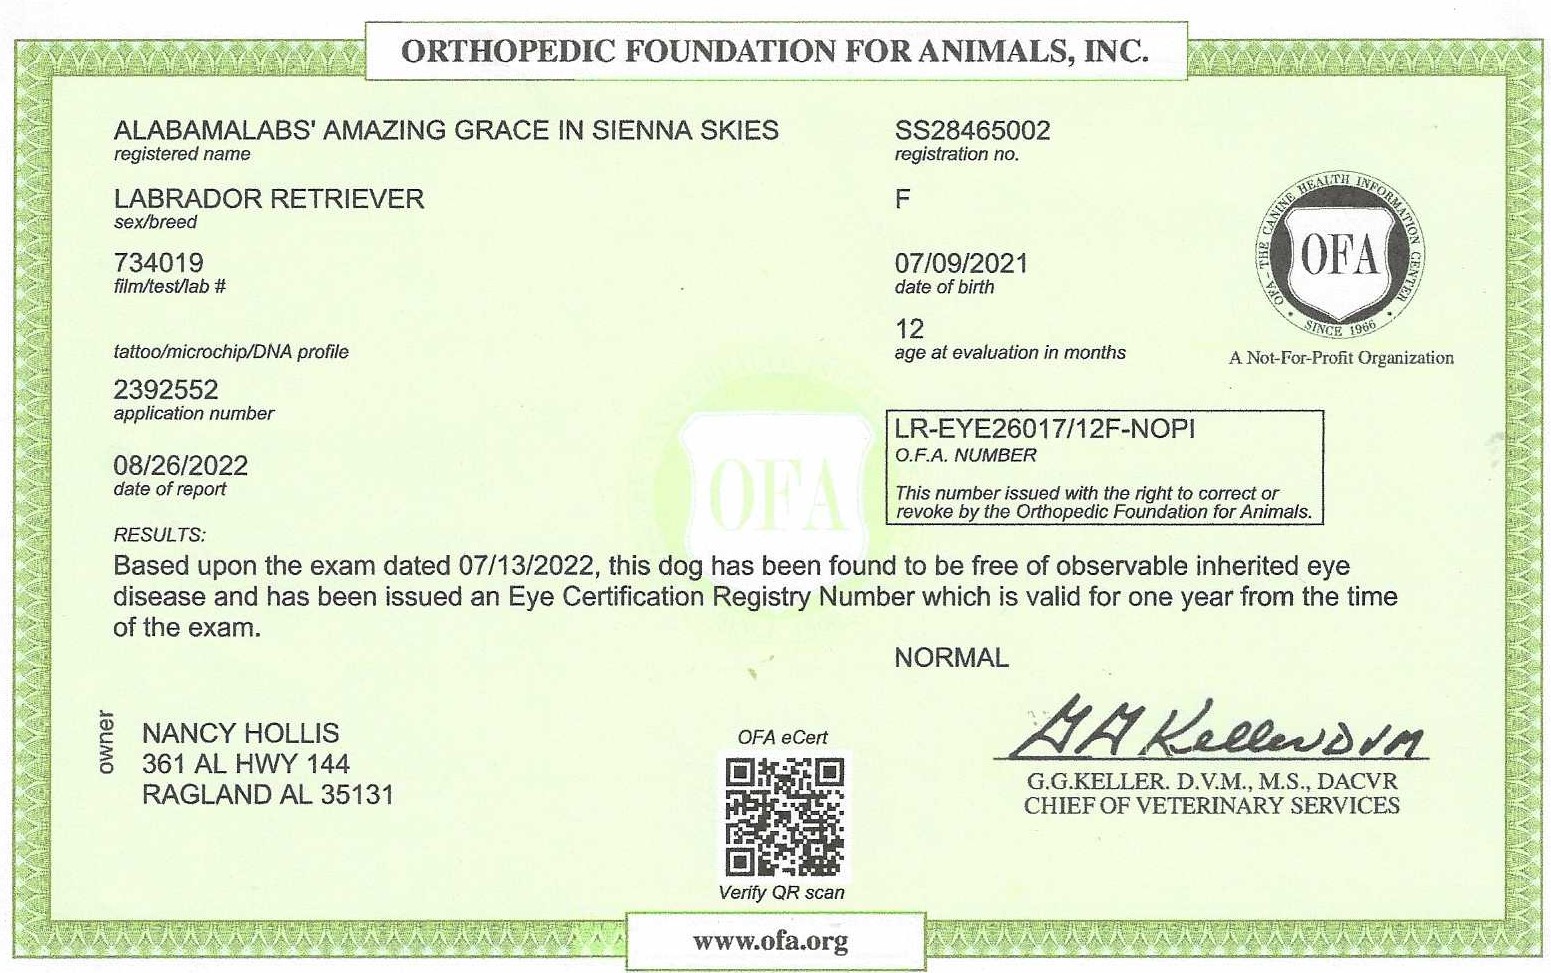 Sienna's OFA Eye Certification